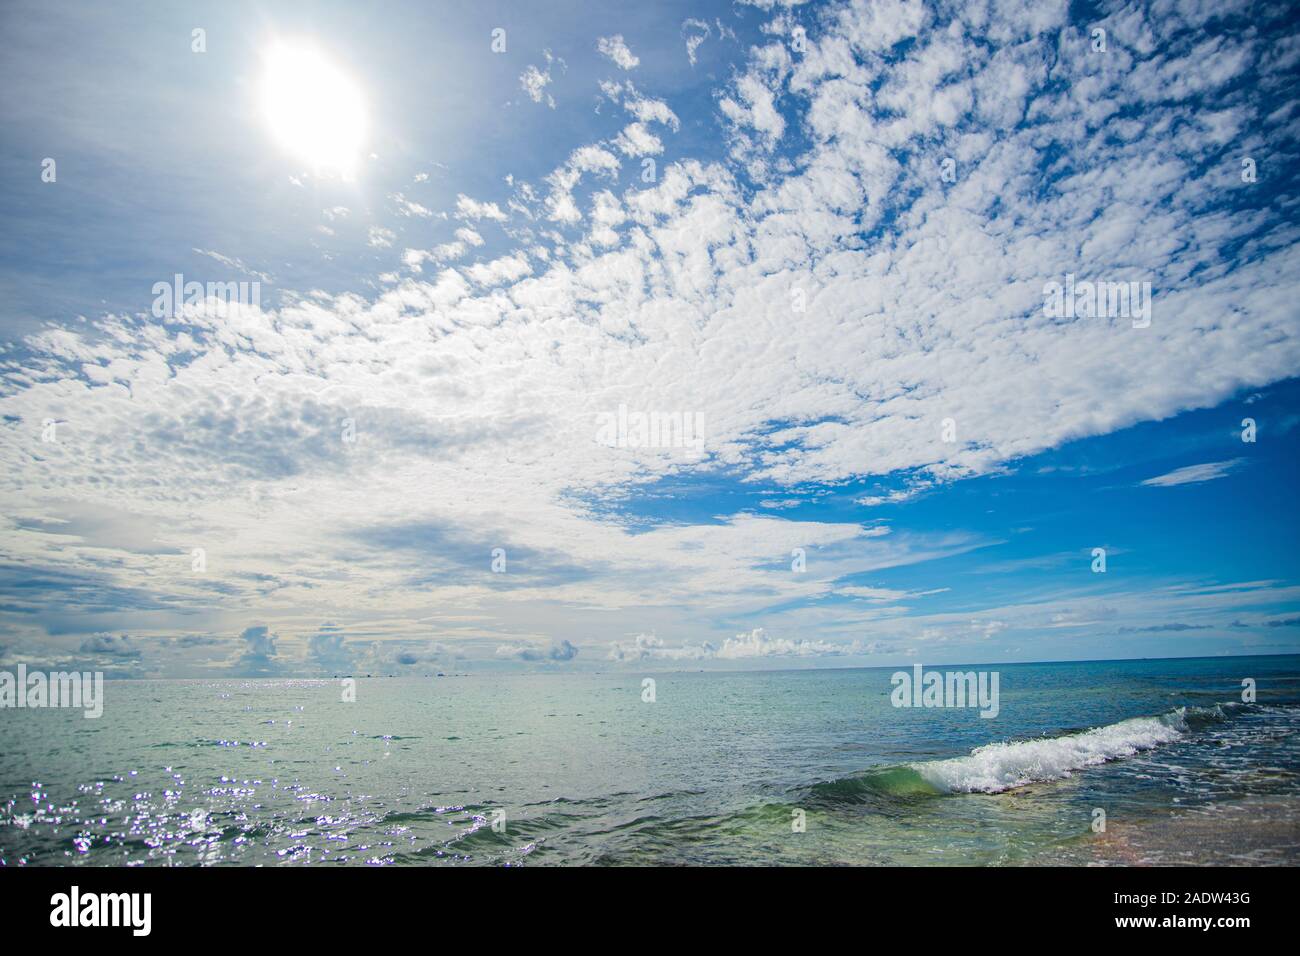 Belle plage mexicaine et ciel à Mer des Caraïbes Banque D'Images